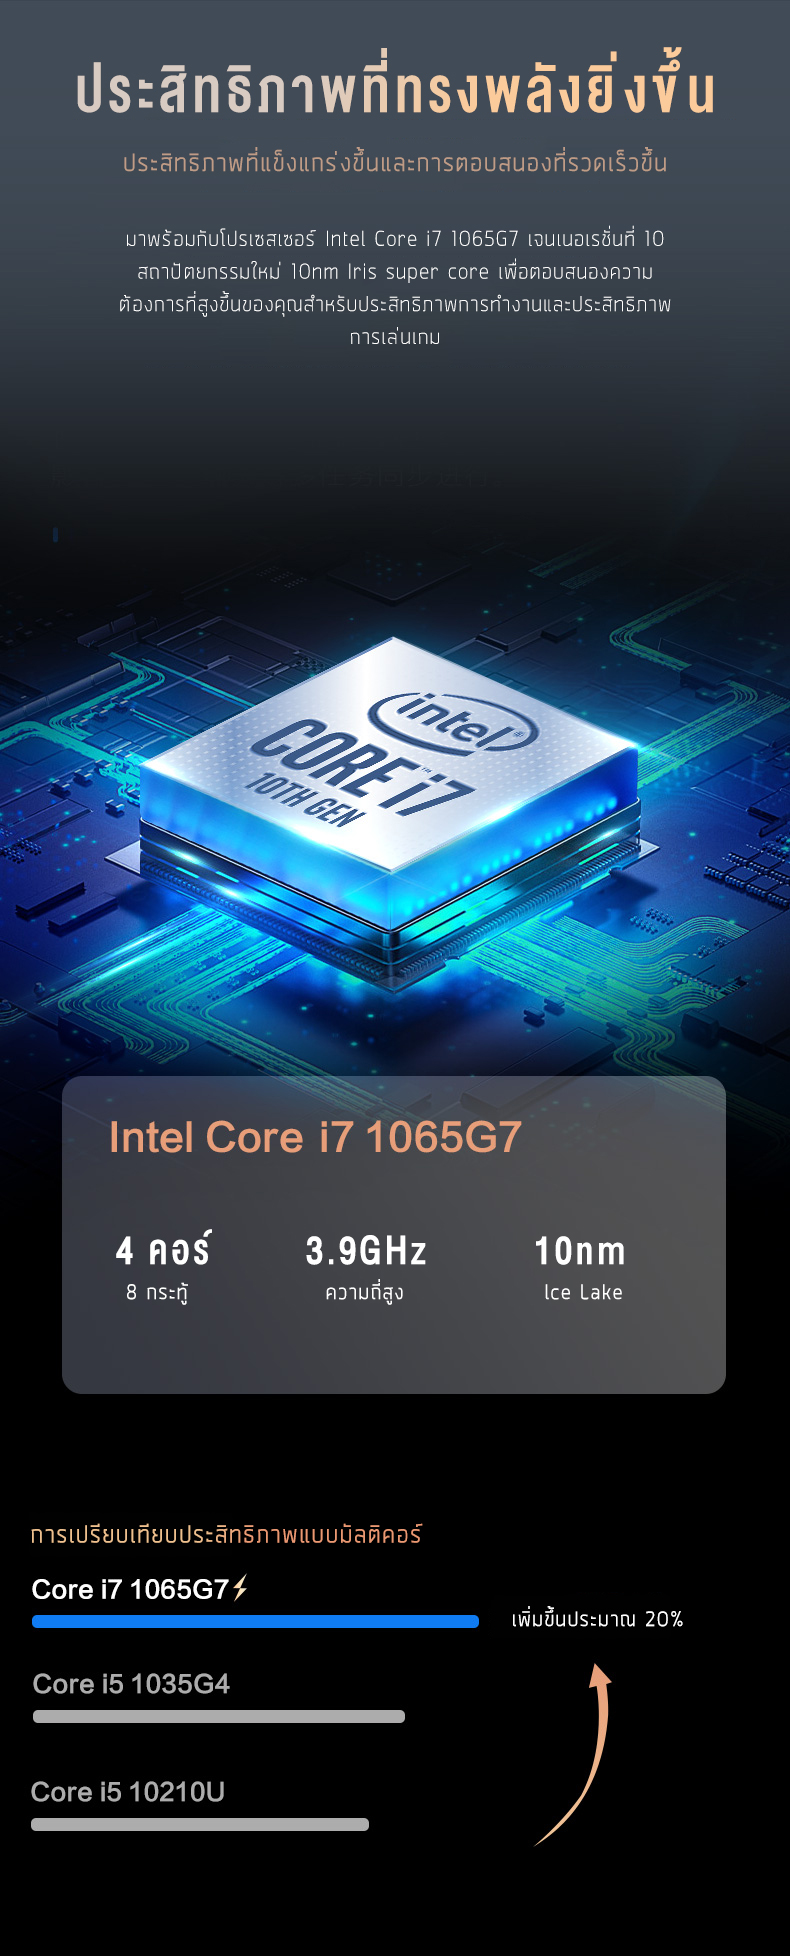 ภาพที่ให้รายละเอียดเกี่ยวกับ โน๊ตบุ๊ค ASUS factory&G 2022 new Intel i7 gen 10 RAM 16GB คอมแรงๆเล่นเกม เล่นคอมพิวเตอร์โน๊ตบุ๊ค gta v มือ 1 ราคาถูก Laptop Gaming Notebook Intel i5 RAM 8G SSD 128/256/512gb Warranty